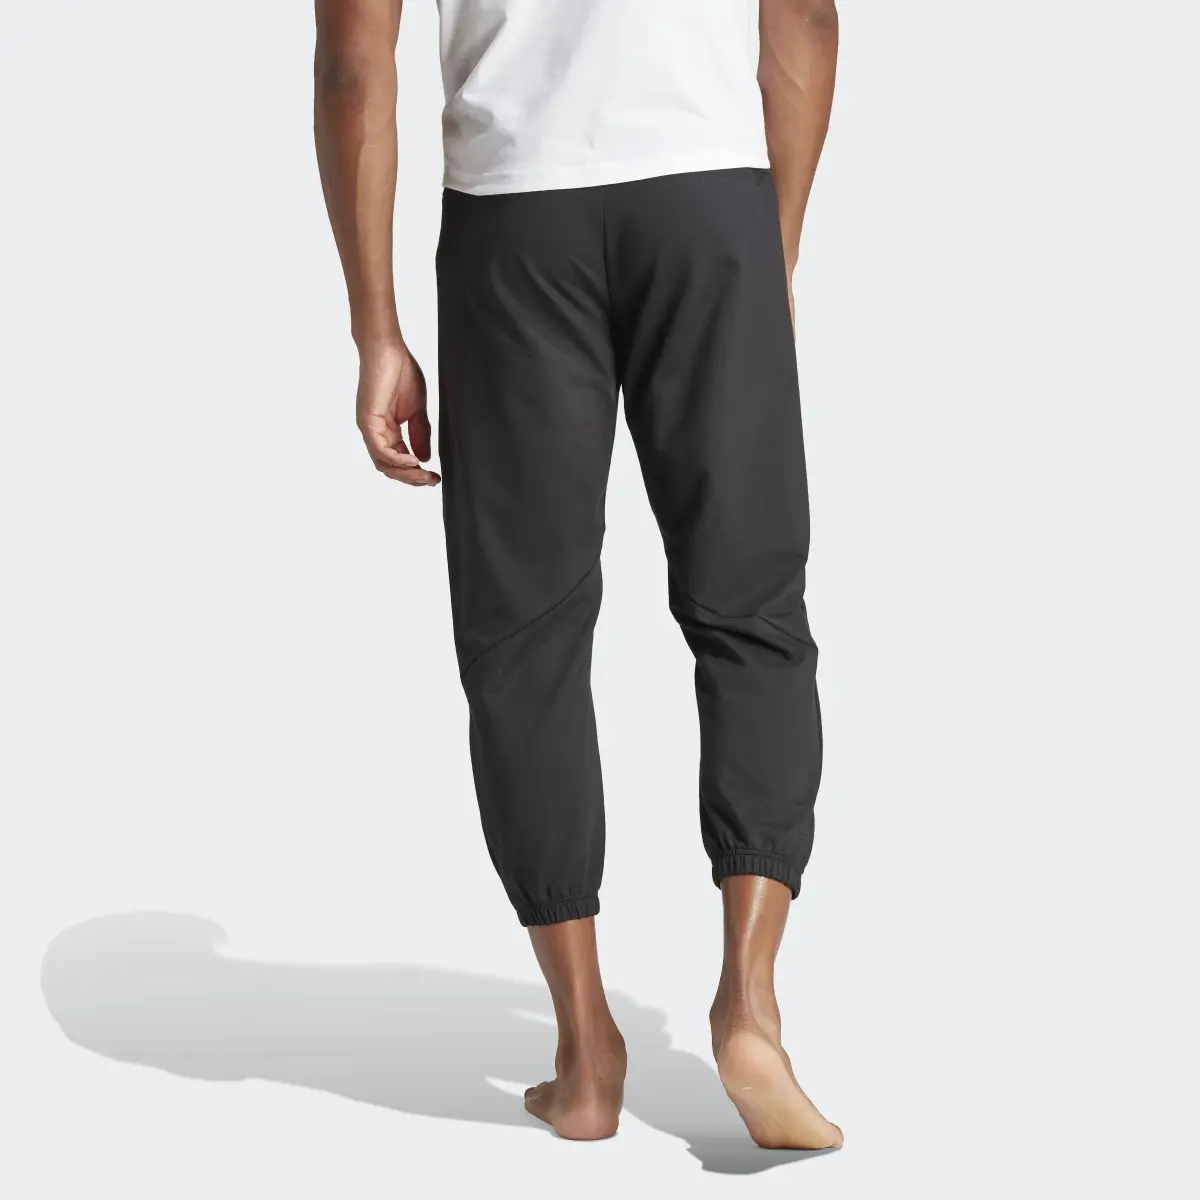 Adidas Designed for Training Yoga Training 7/8 Pants. 3